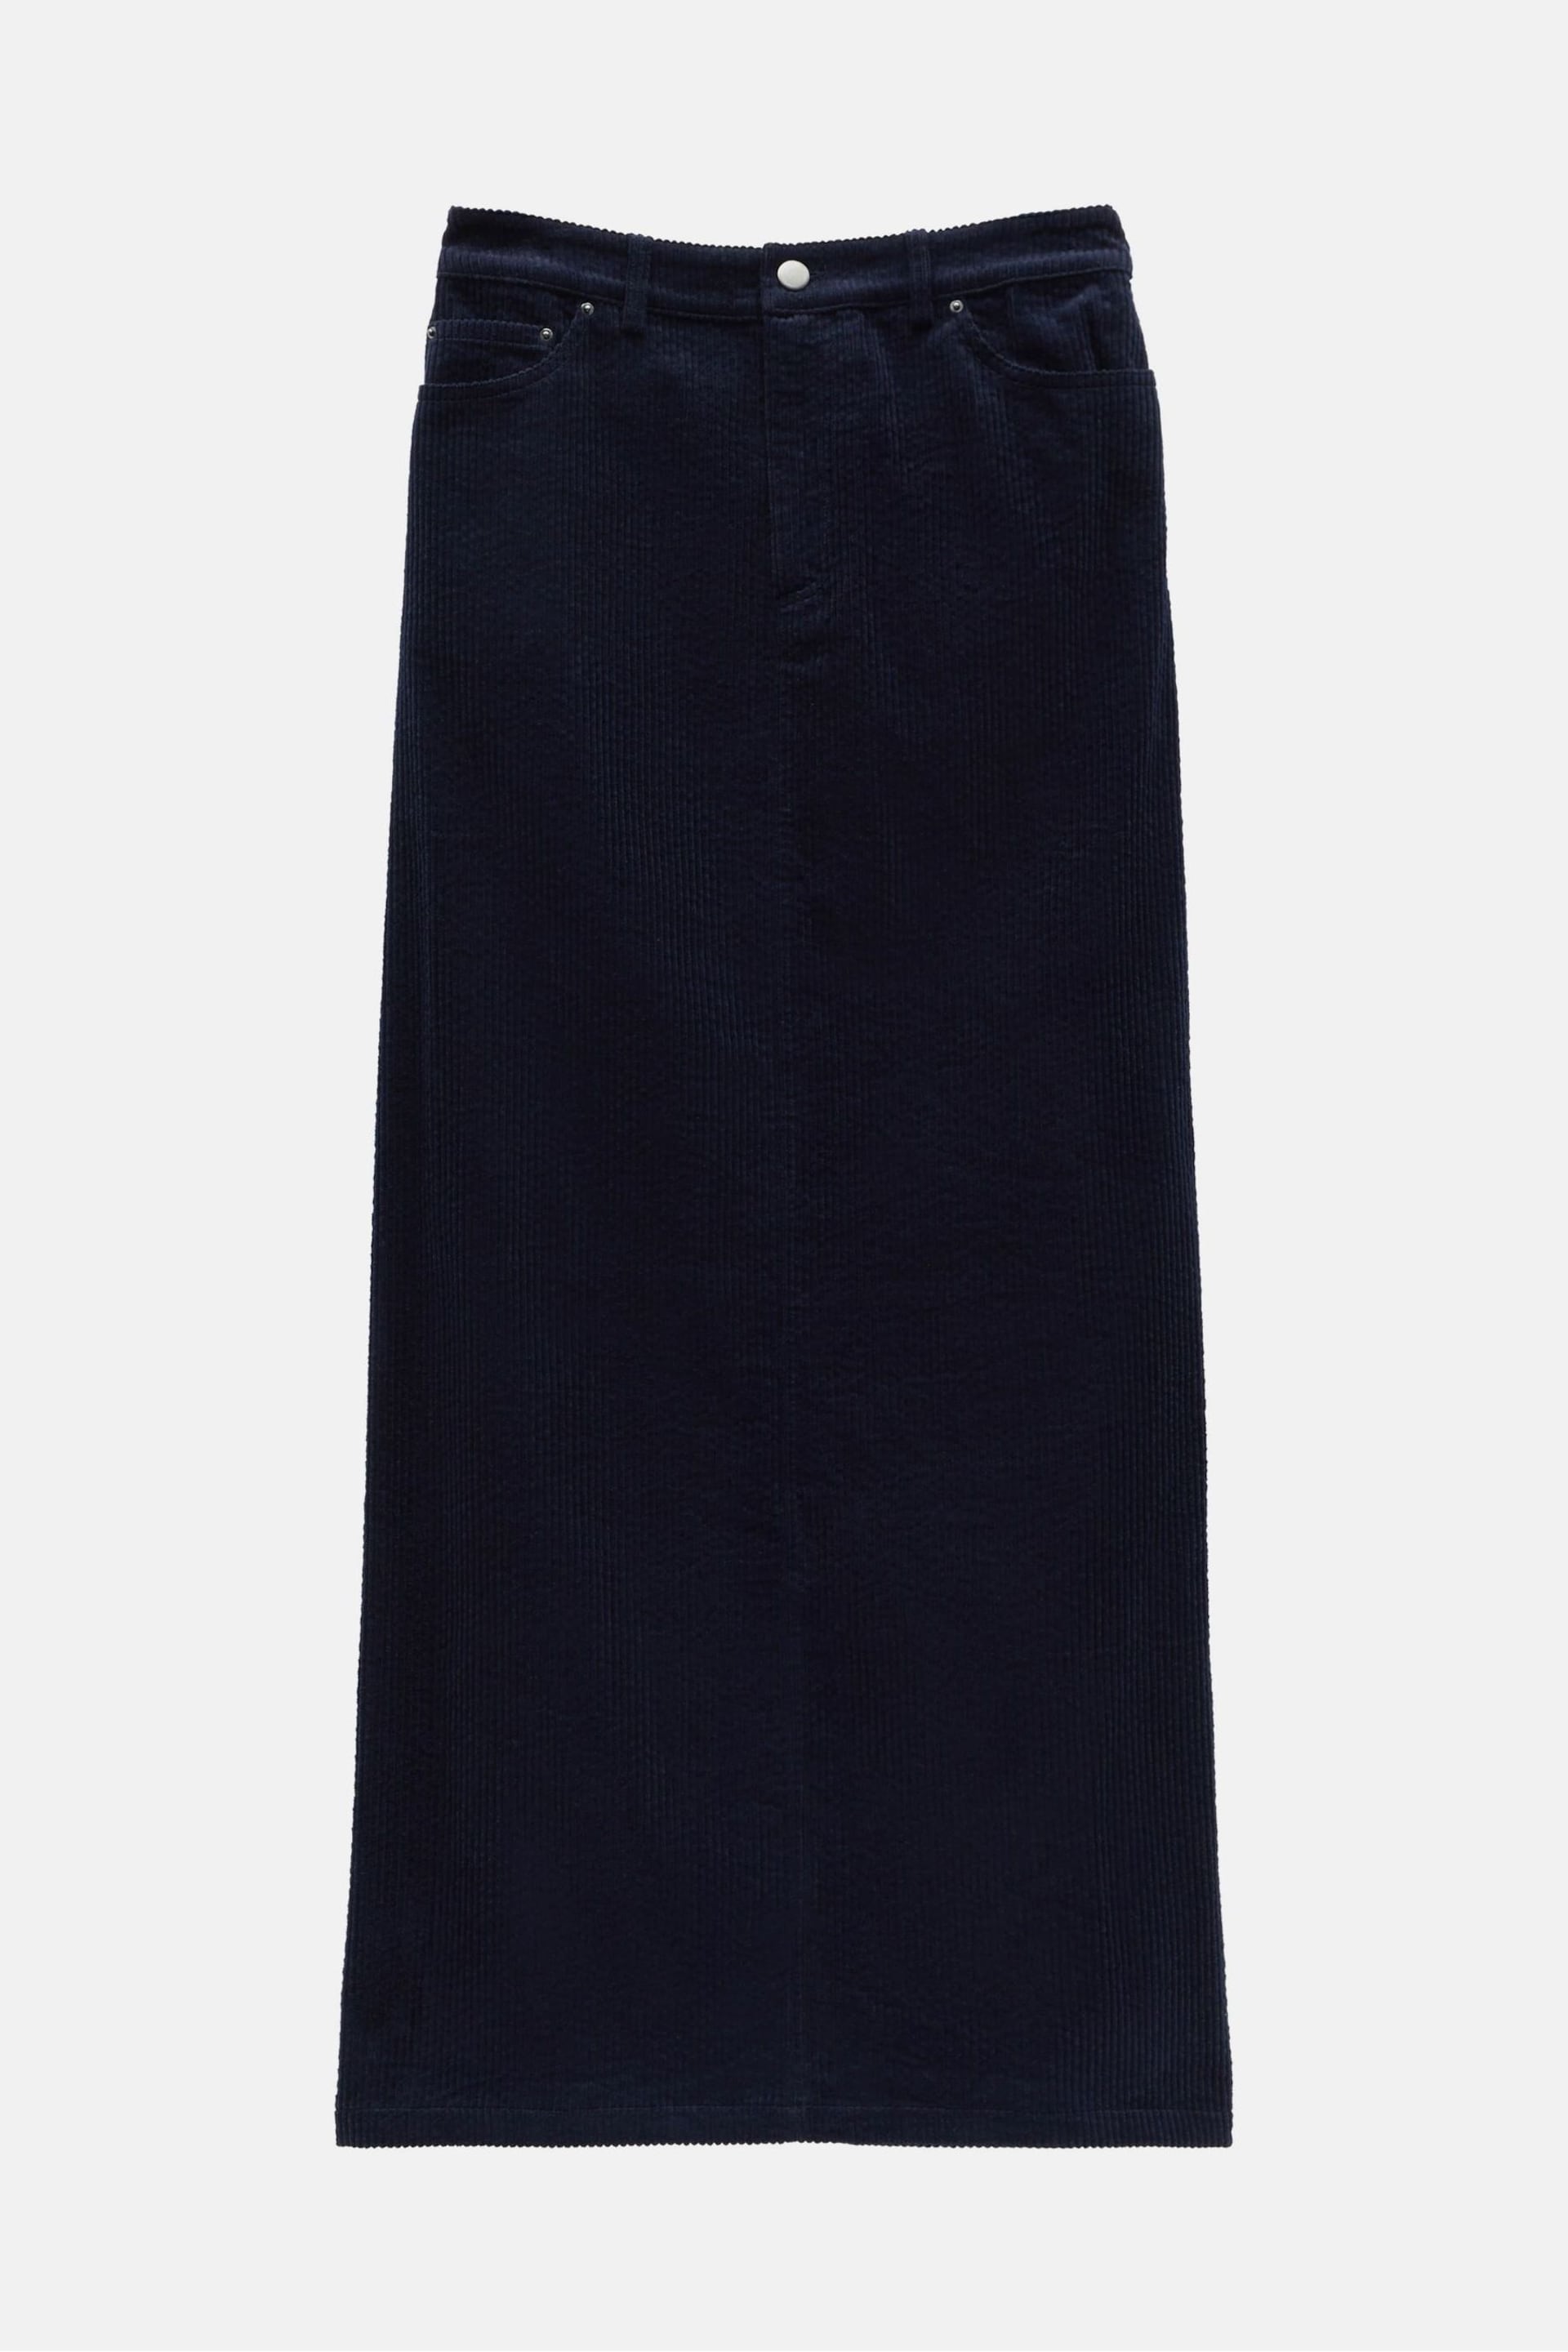 Hush Blue Alanna Cord Maxi Skirt - Image 5 of 5